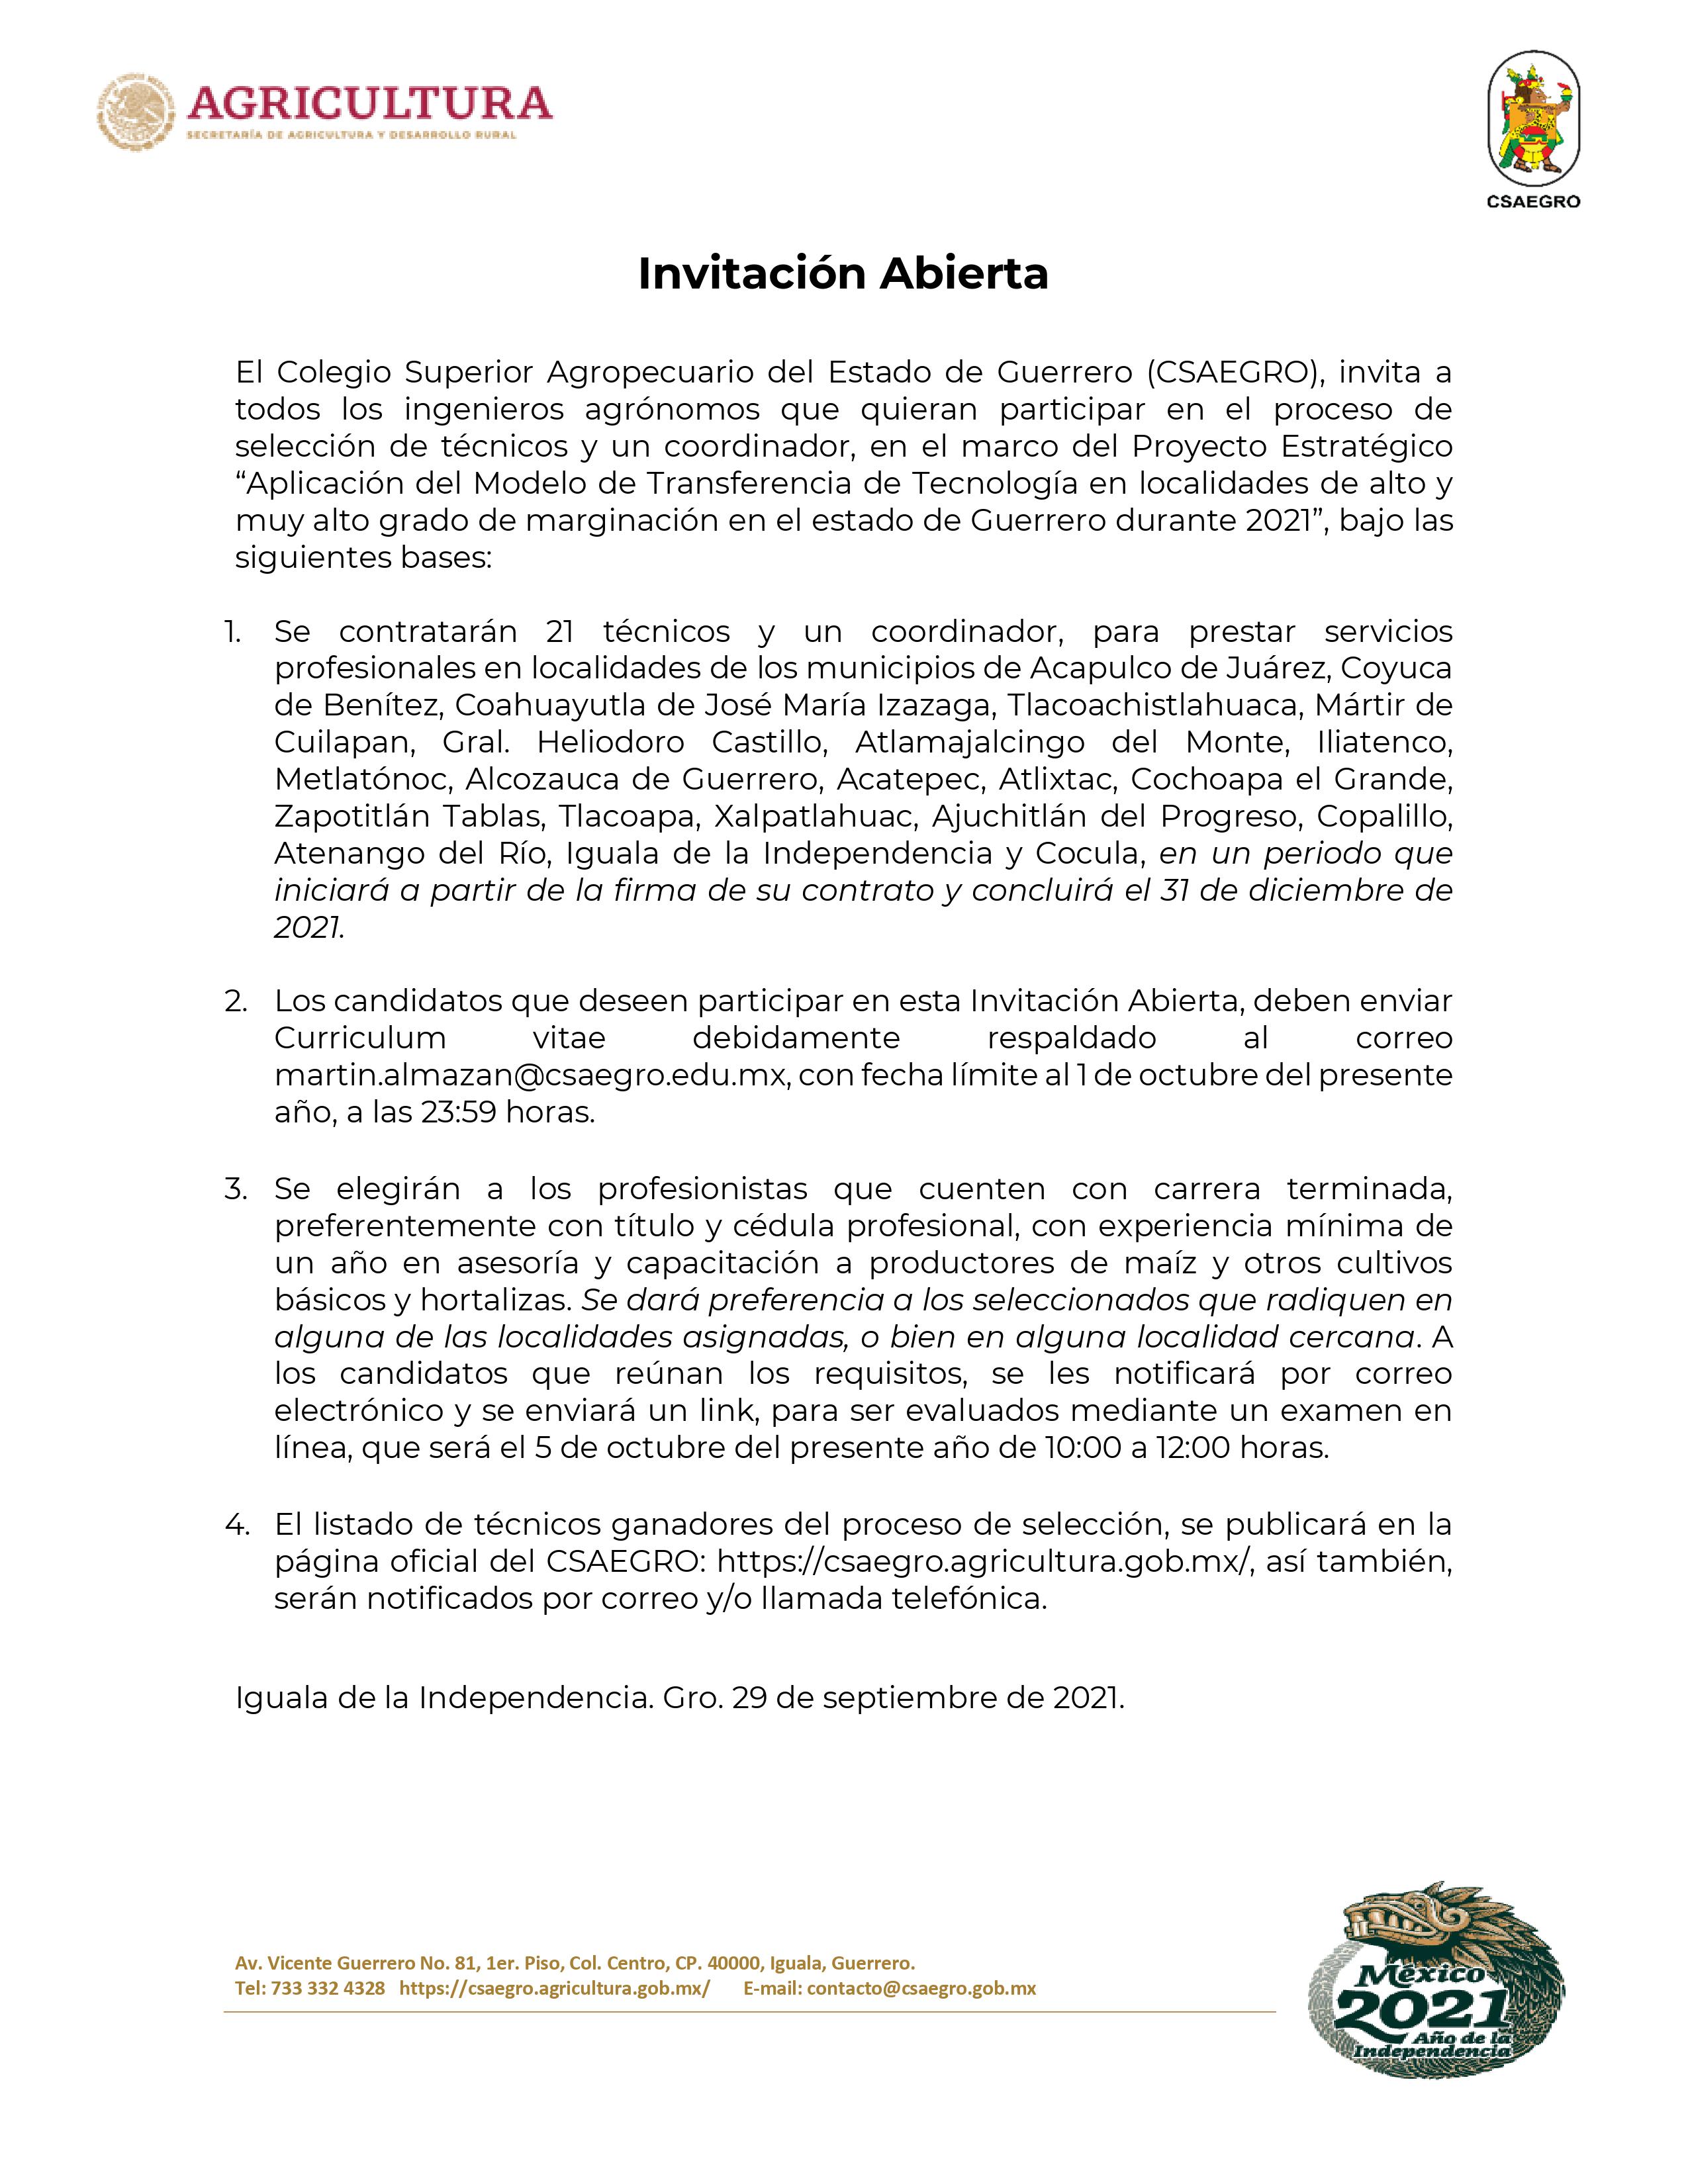 Invitación Abierta - Para el Proceso de selección “Aplicación del Modelo de Transferencia de Tecnología en localidades de alto y muy alto grado de marginación en el estado de Guerrero durante 2021”